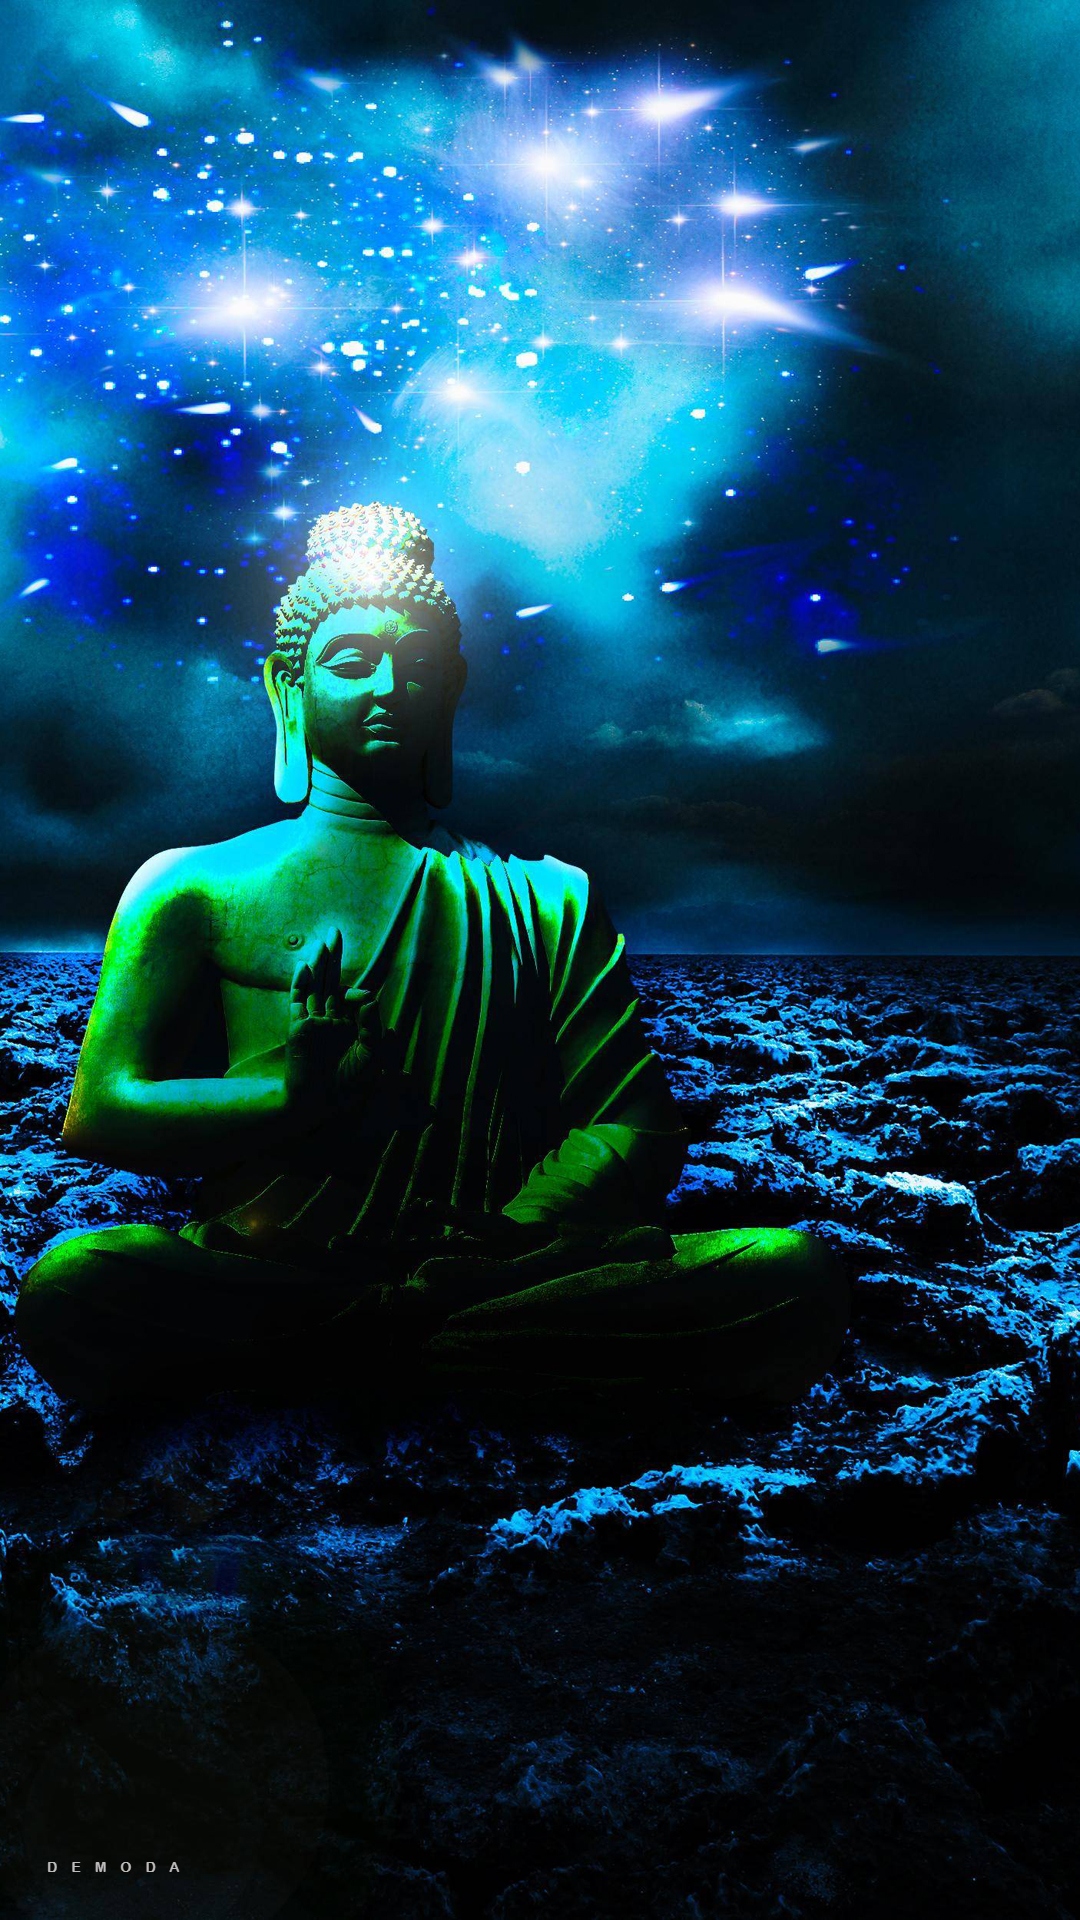 Hình Ảnh Phật Đẹp 3D Mang Tới Cảm Giác Bình An May Mắn